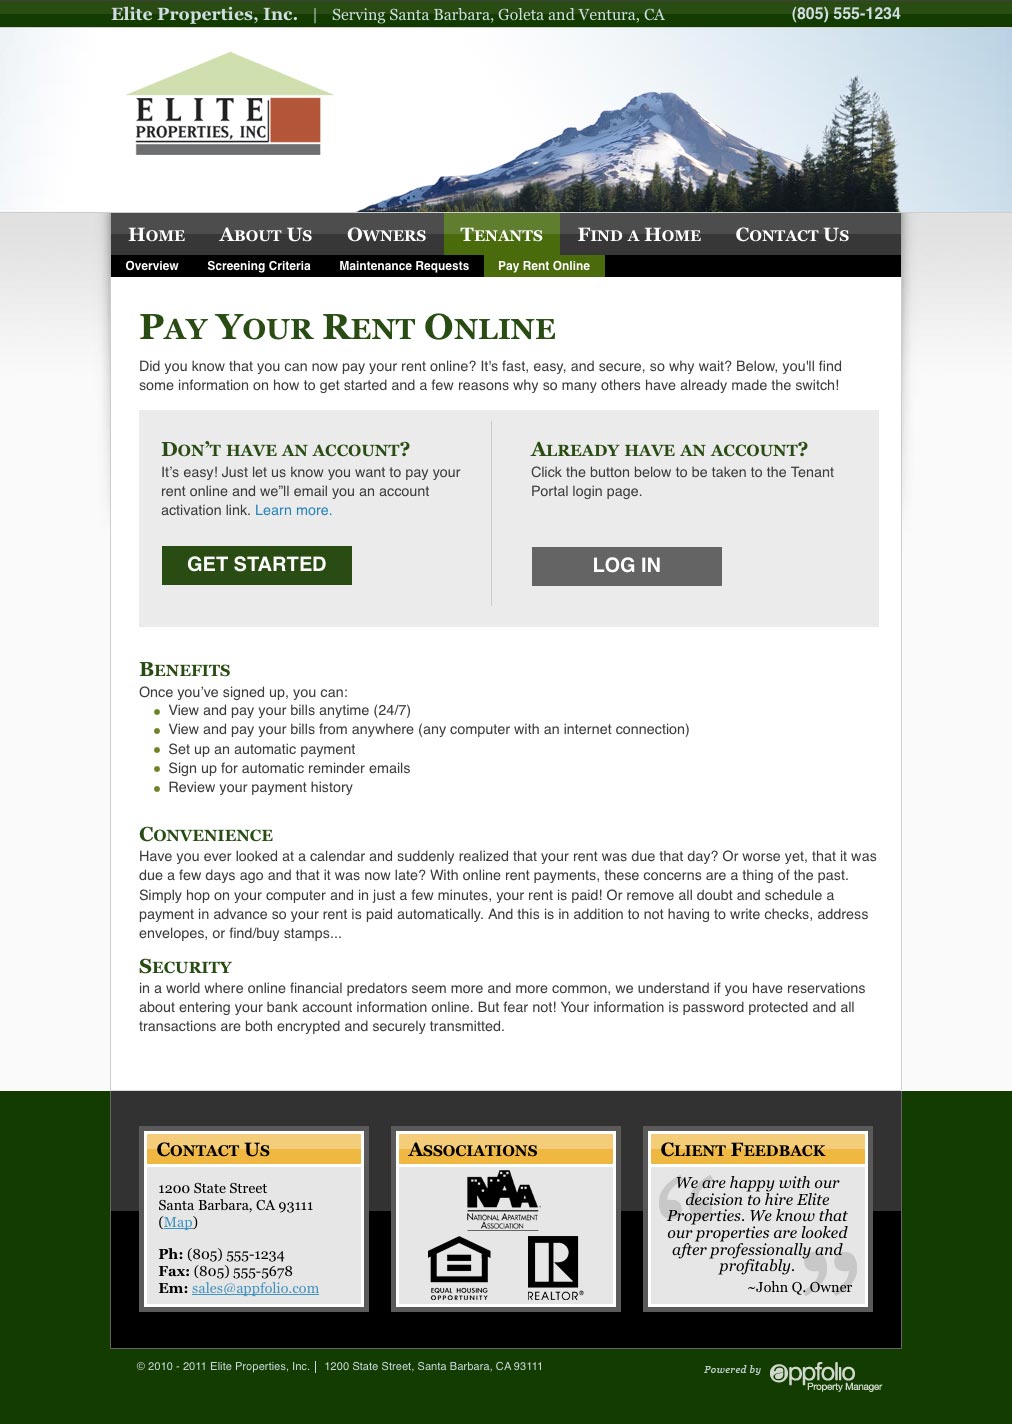 Property Management Websites AppFolio com